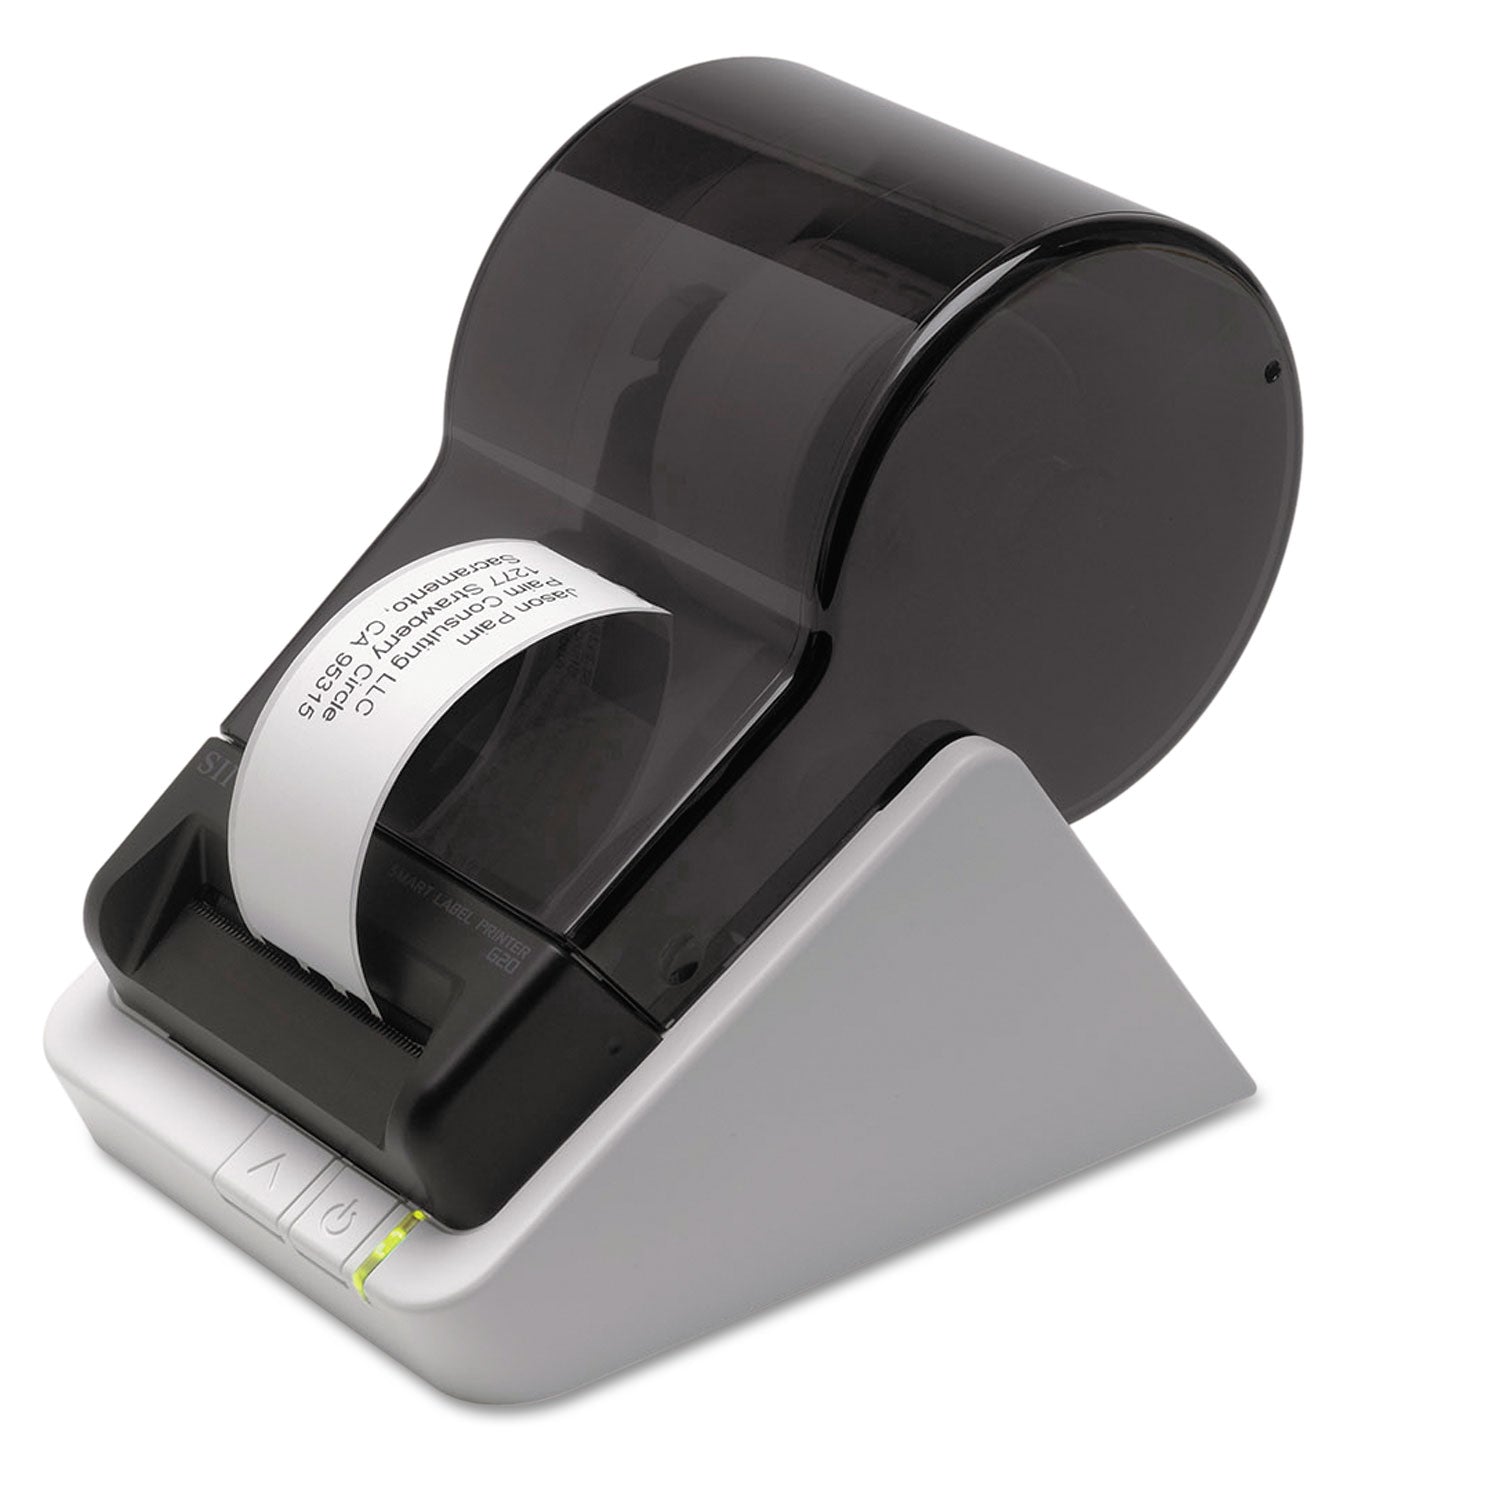 SLP-620 Smart Label Printer, 70 mm/sec Print Speed, 203 dpi, 4.5 x 6.78 x 5.78 - 